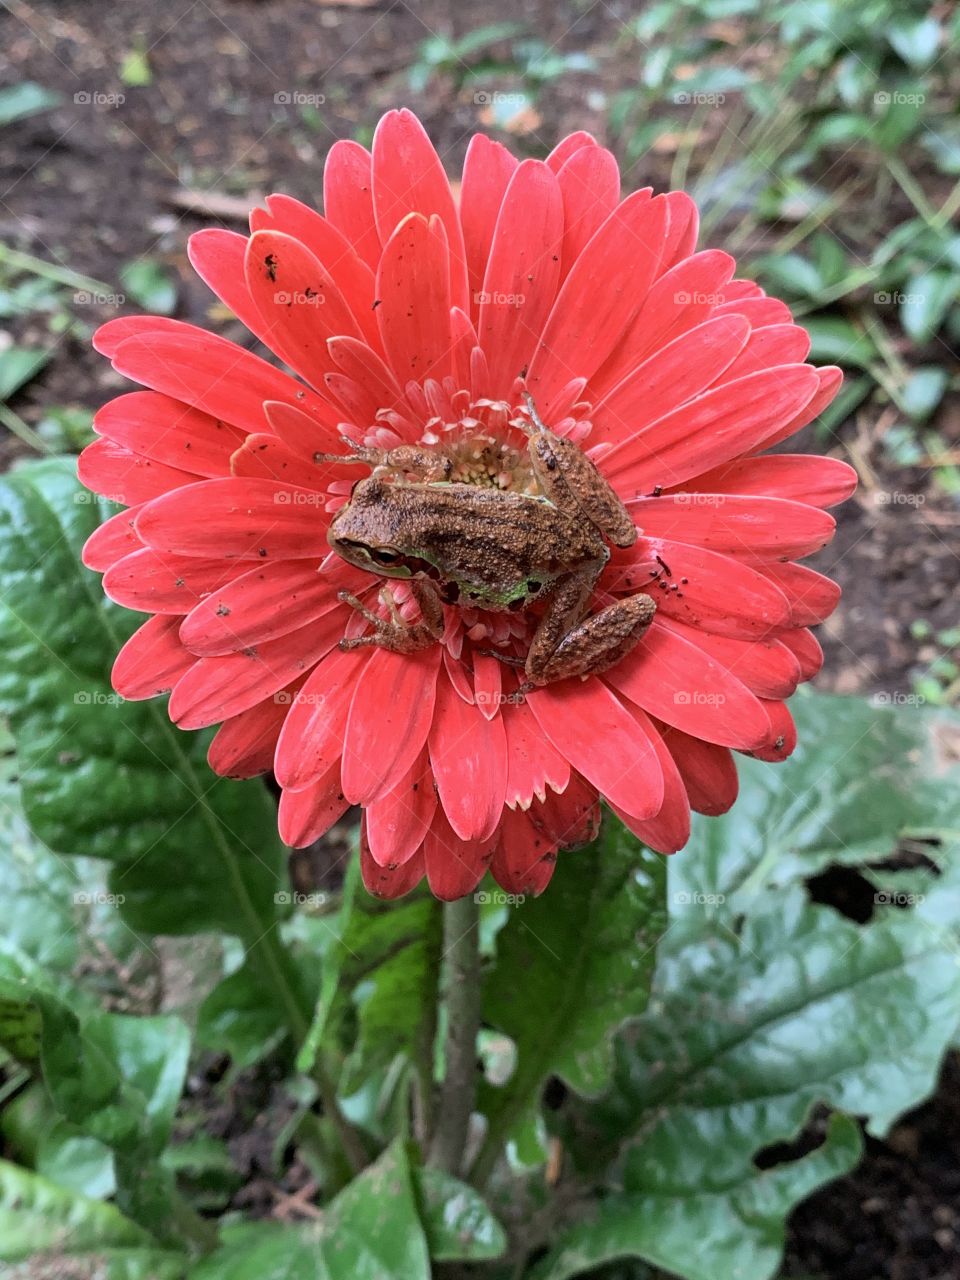 Flower frog!